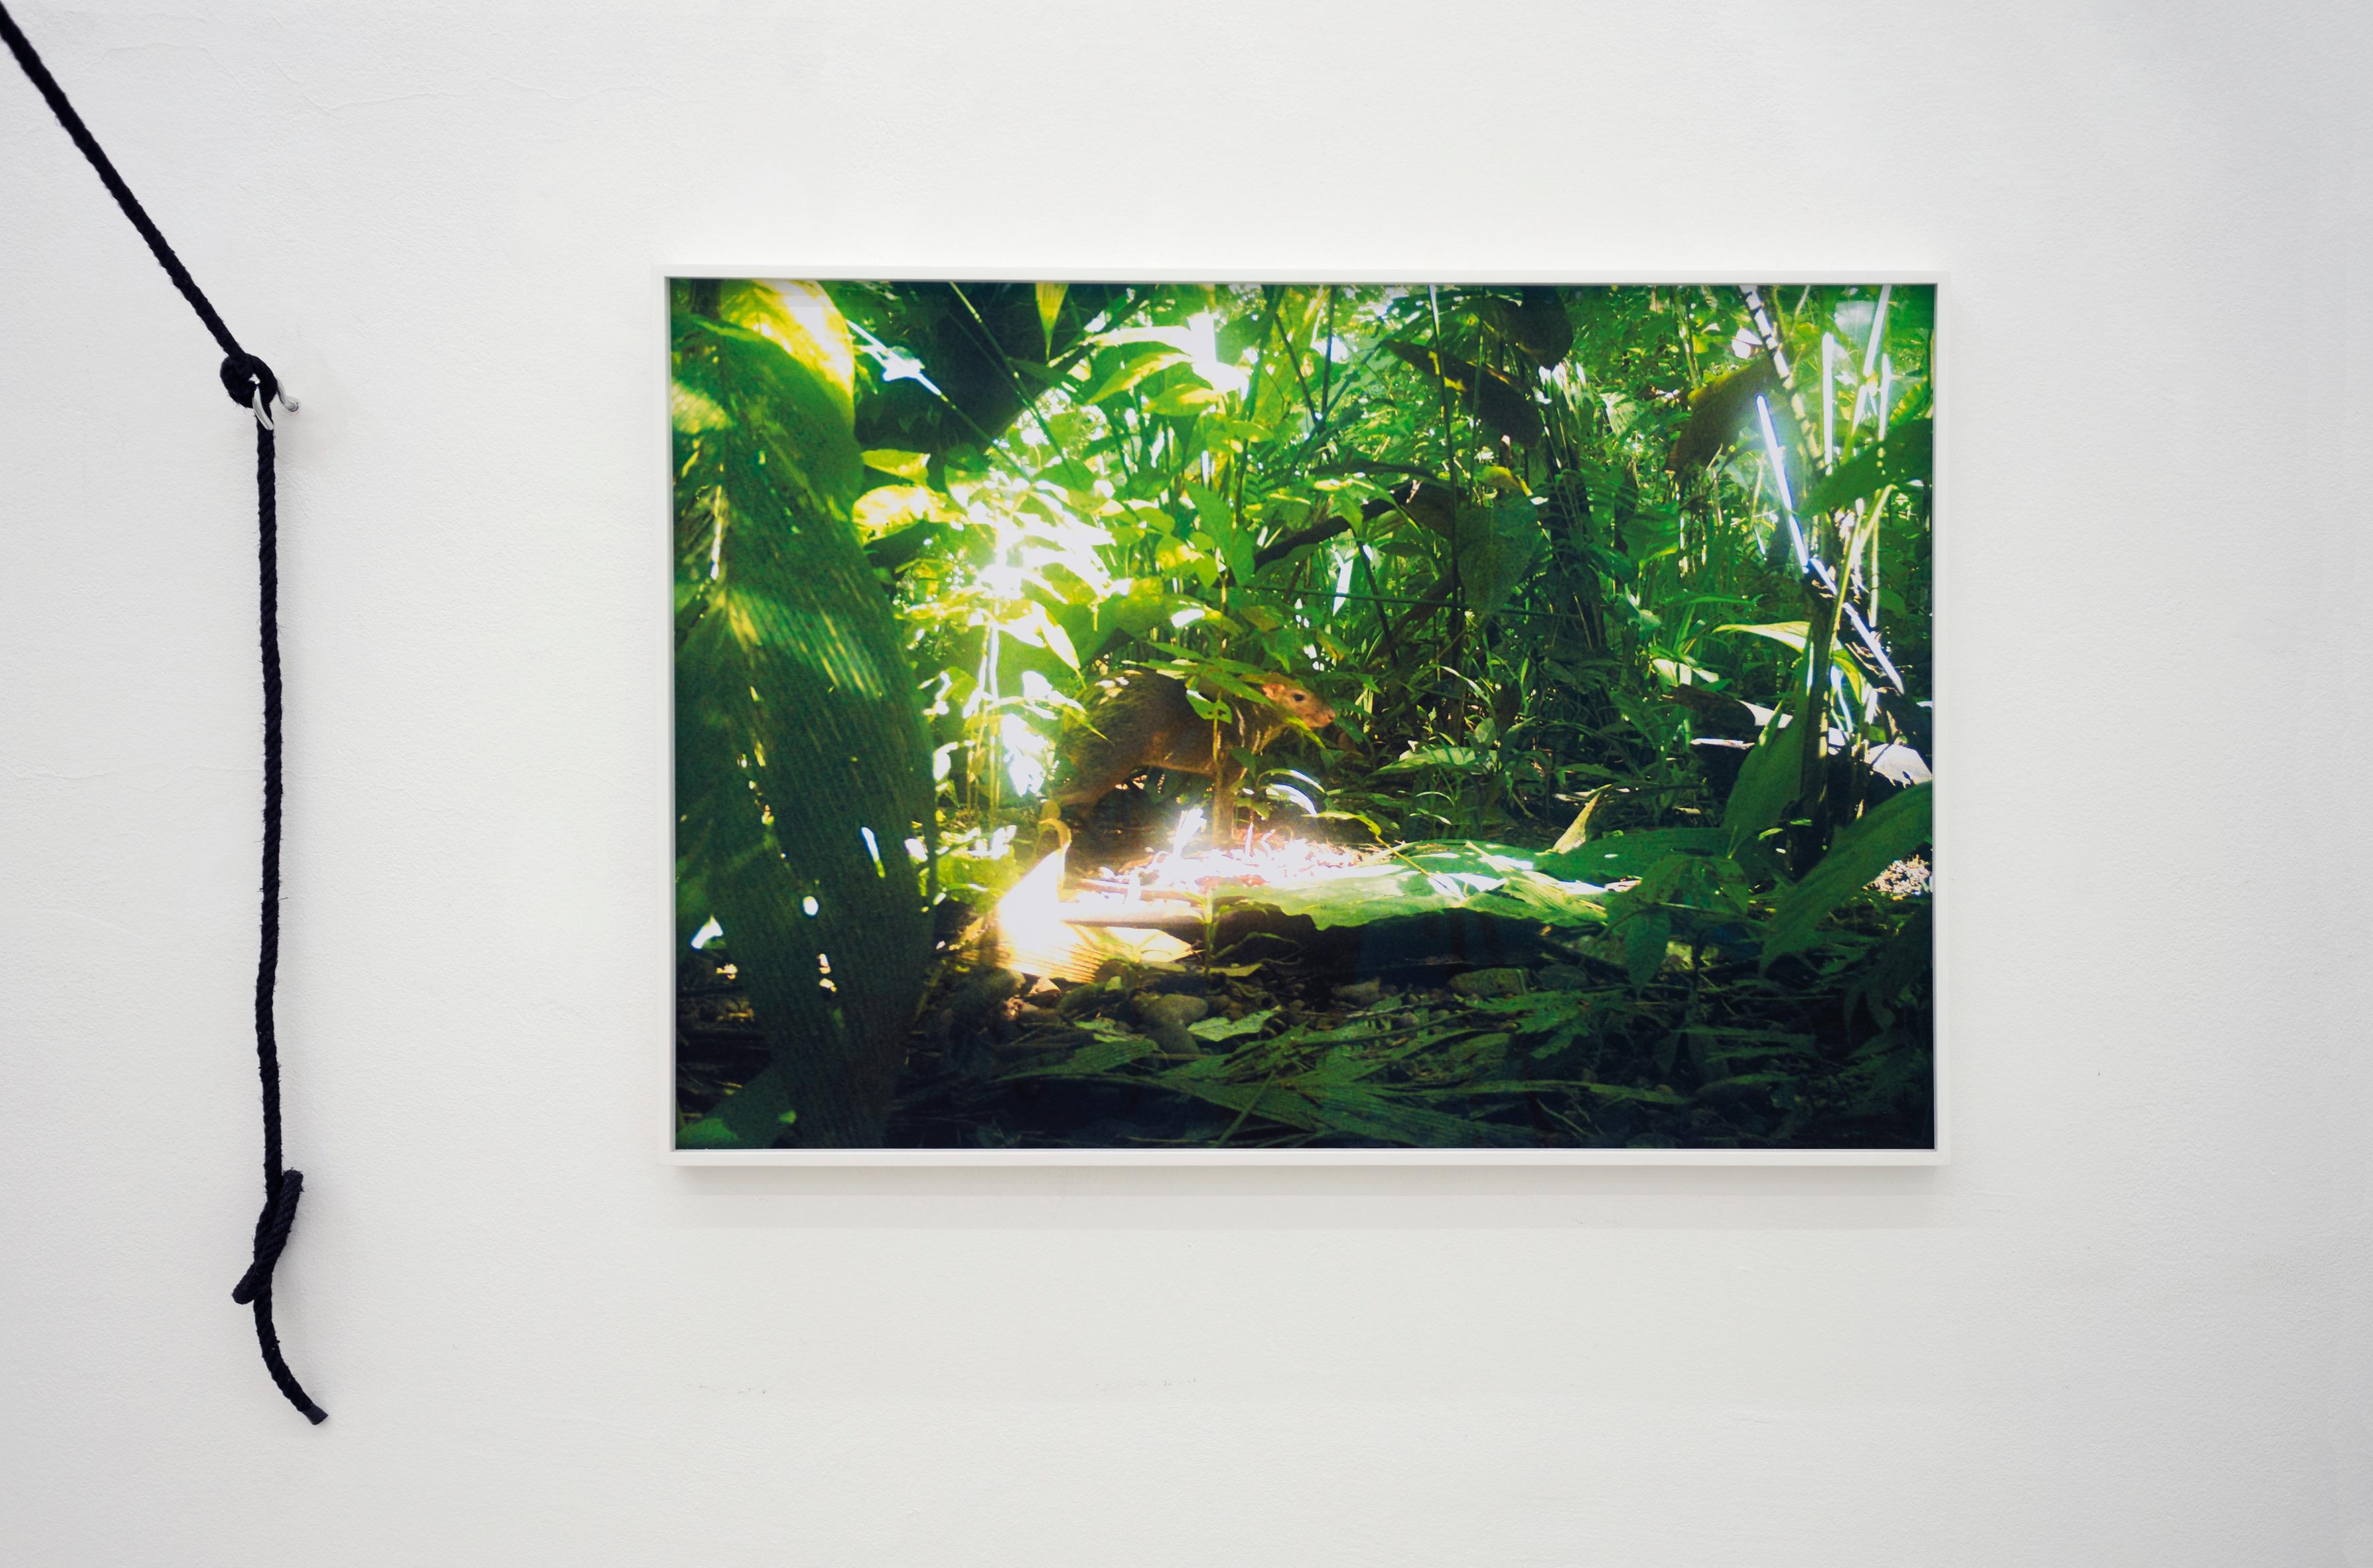 camera trap (Aguti) Ed. 3/3 - Contemporary Color Landscape Jungle Photography For Sale 2